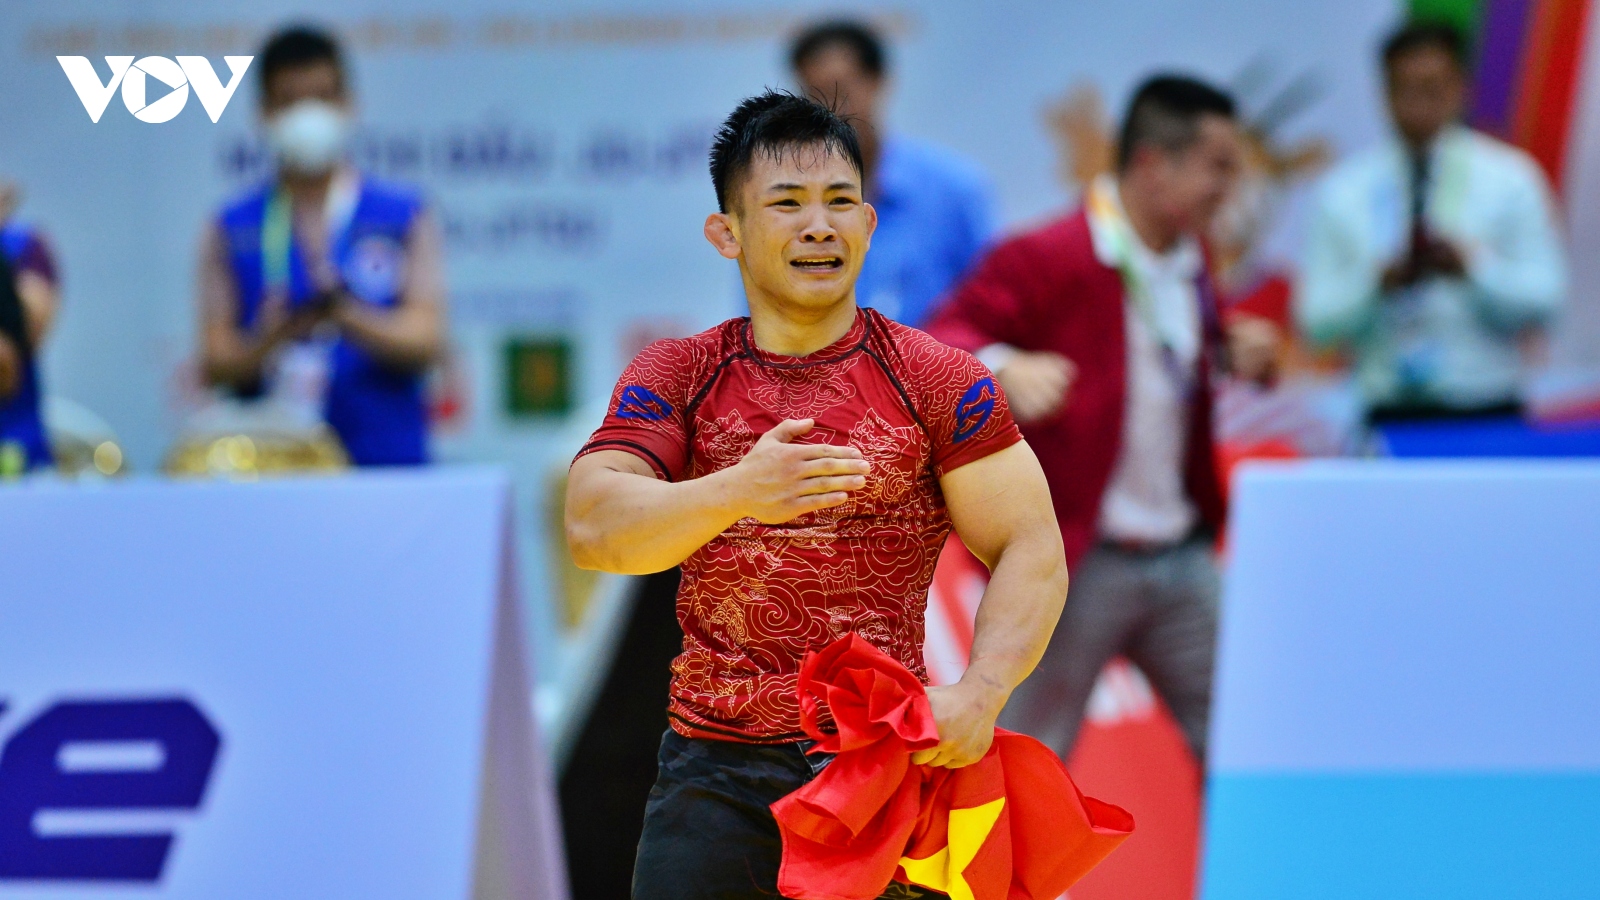 Đào Hồng Sơn bật khóc khi giành HCV Jujitsu ở SEA Games 31